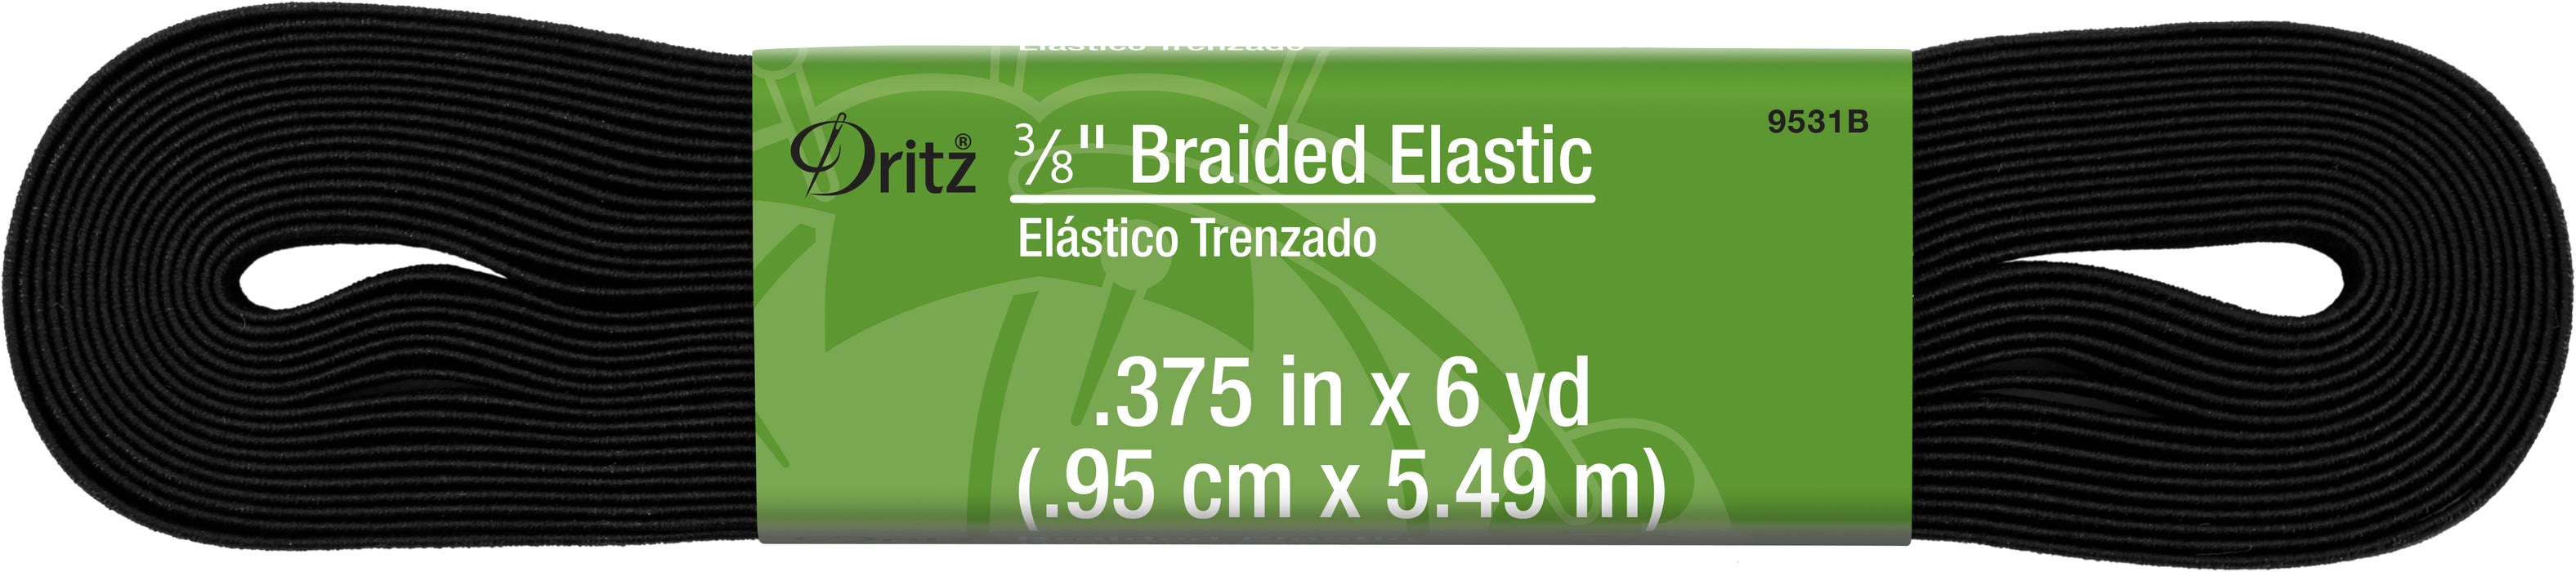 3/8" Black Braided Elastic, 6 yd